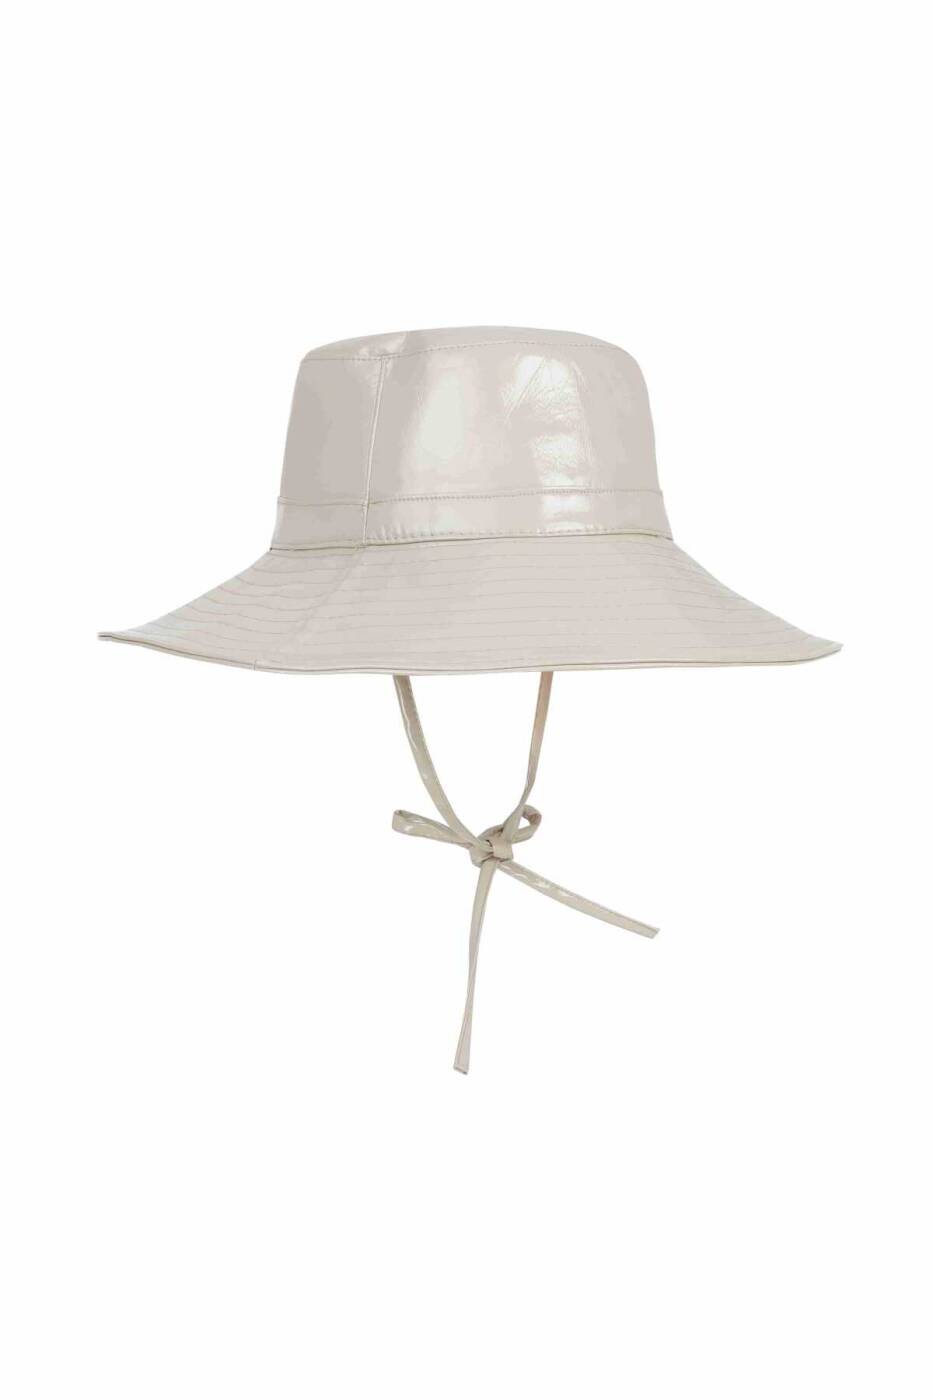  Bağlamalı Şapka Bej - 1